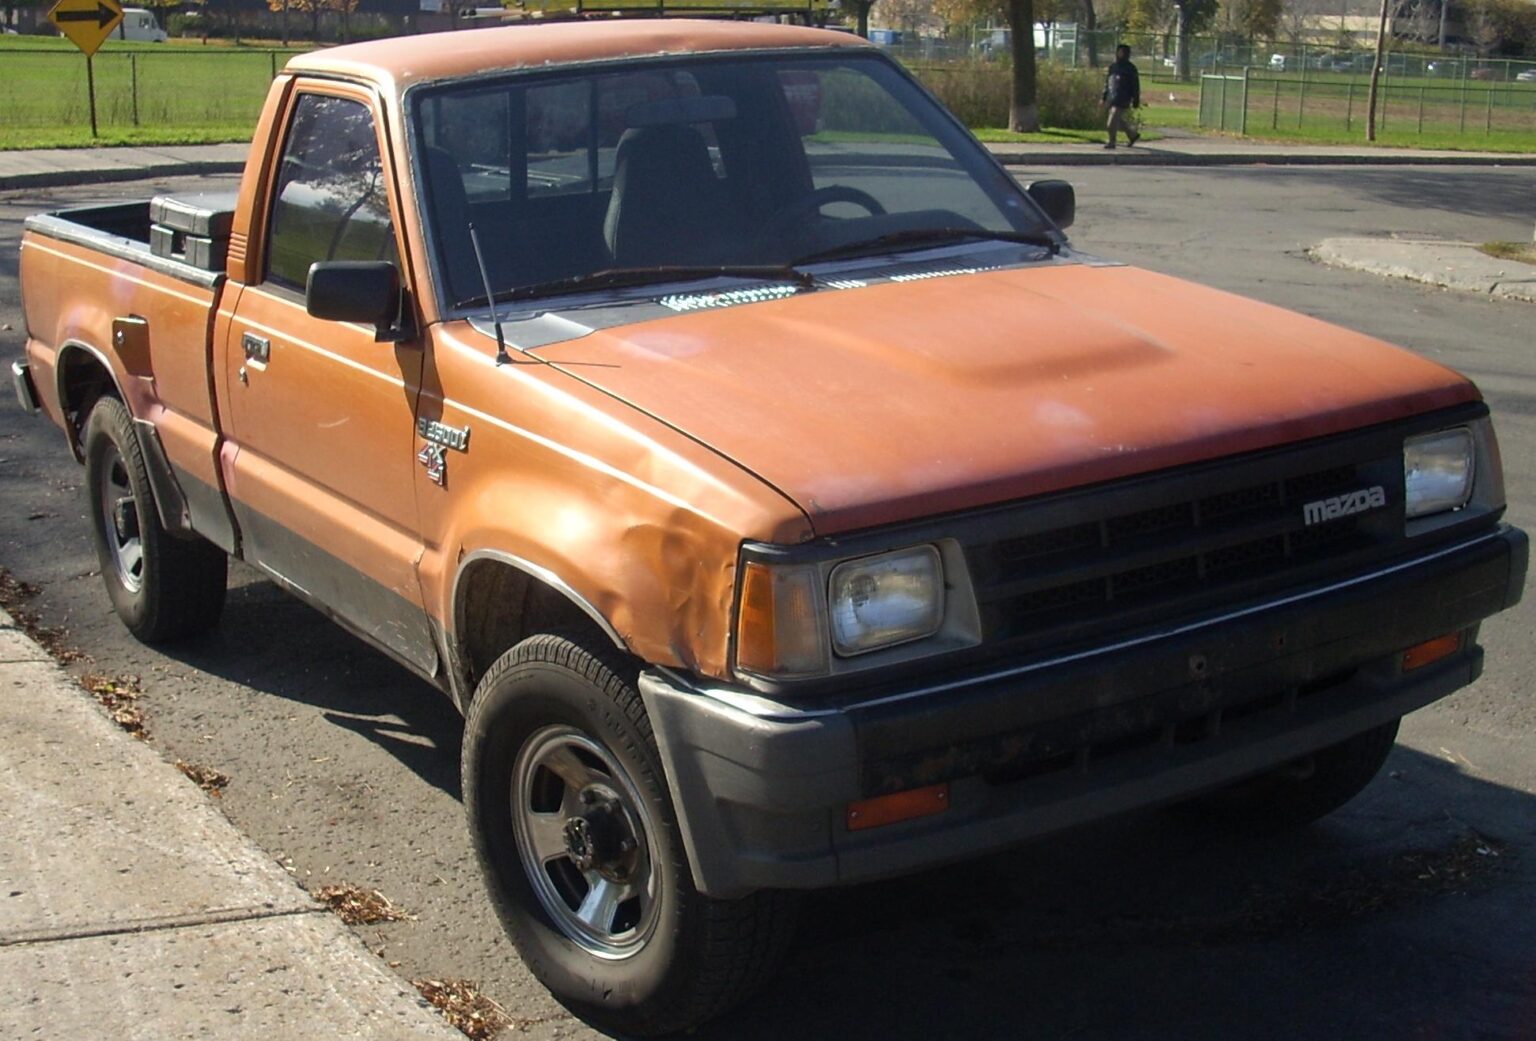 MazdaB2600-1985c